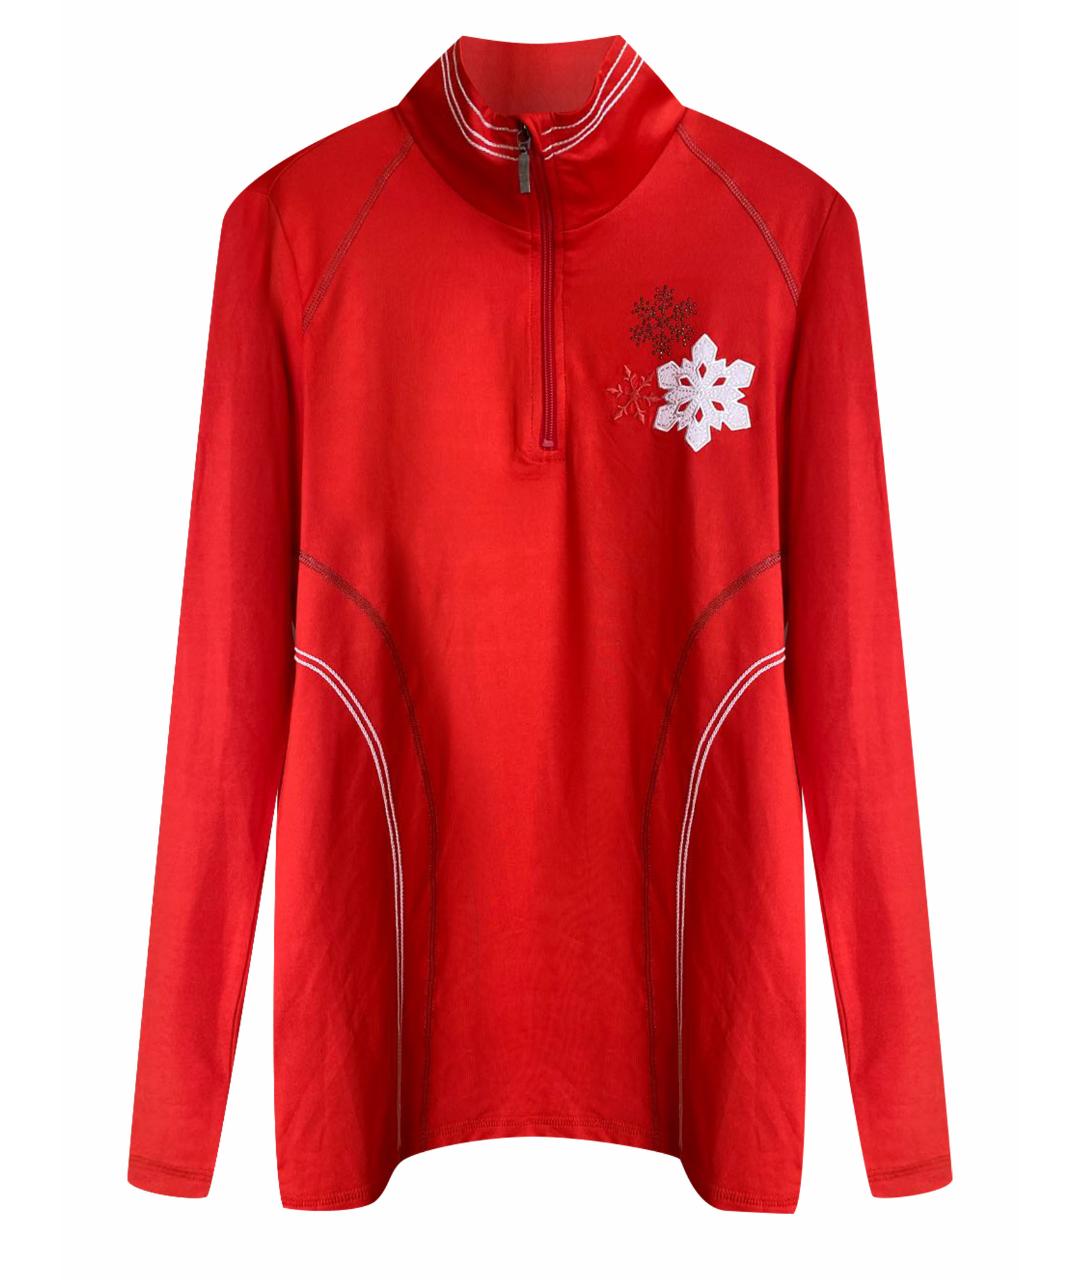 SPORTALM Красная полиамидовая спортивная куртка, фото 1